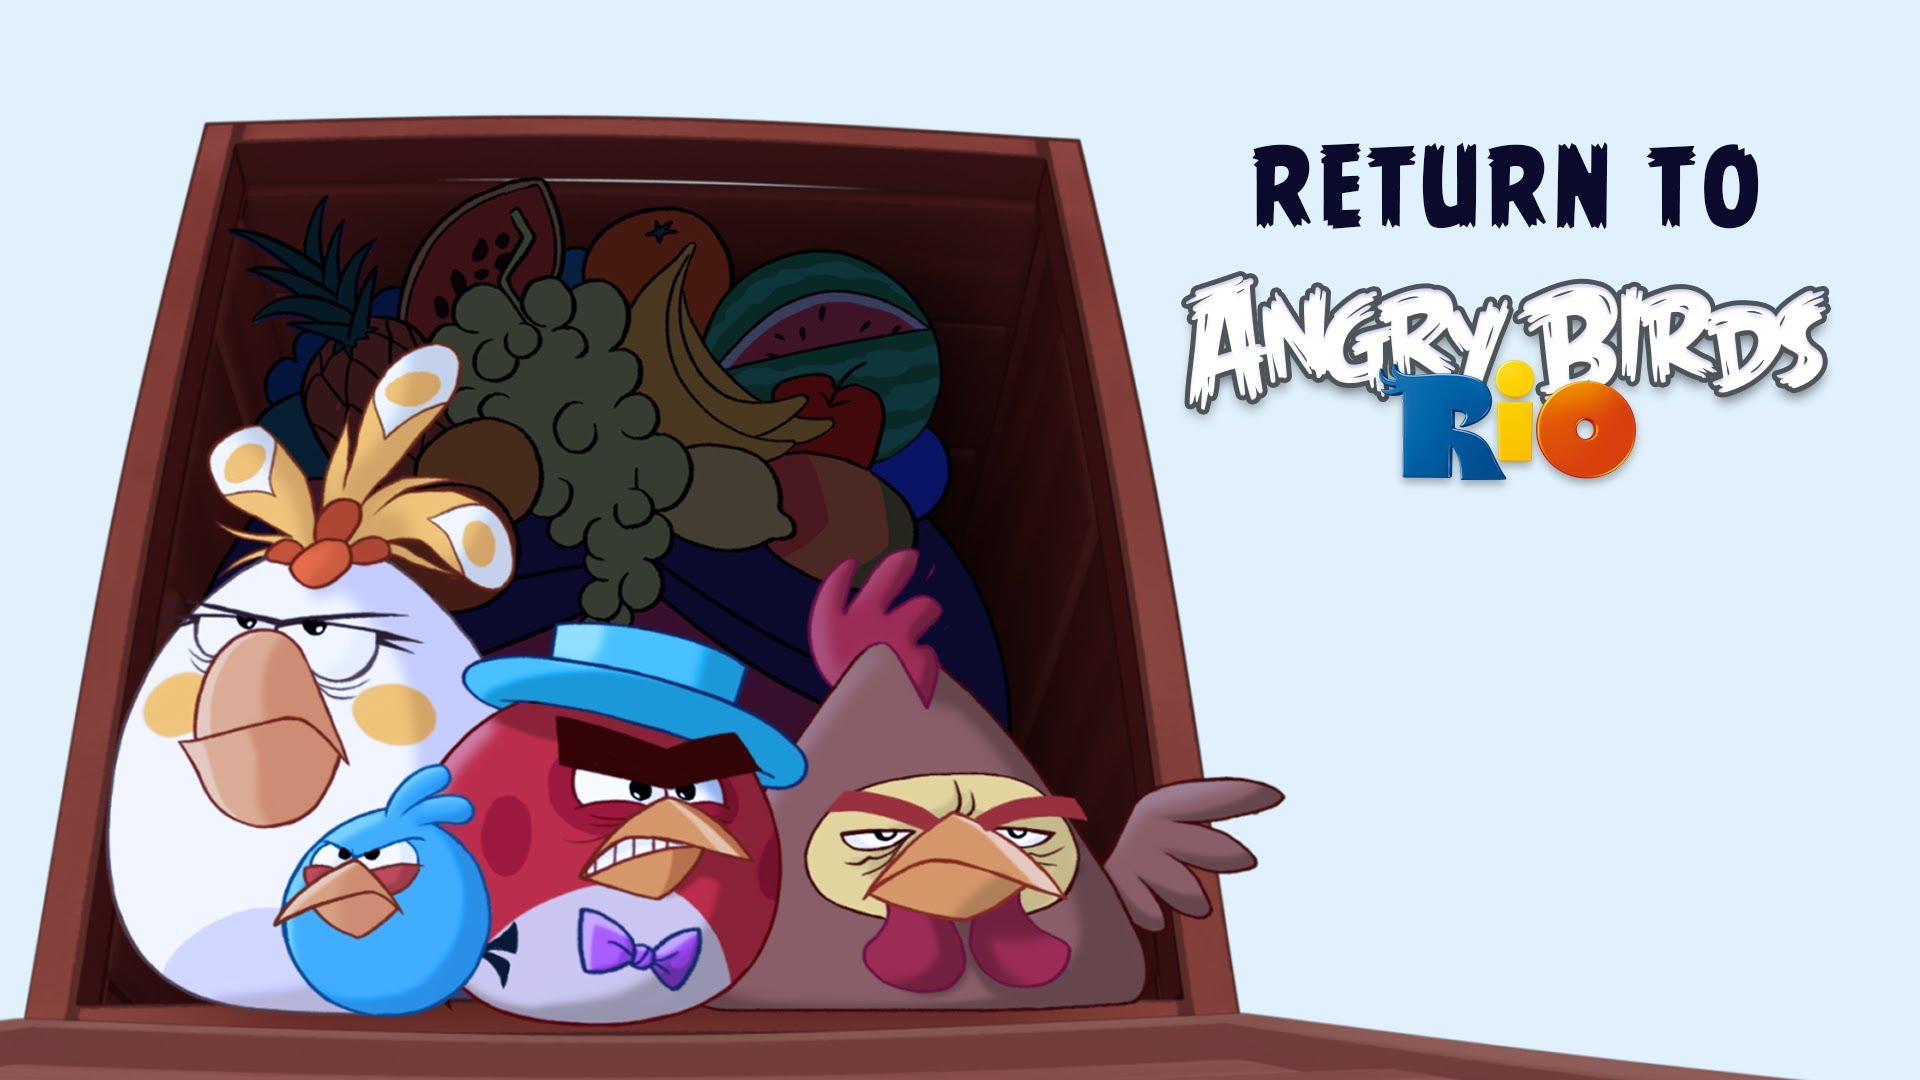 angry birds rio 2 gratis